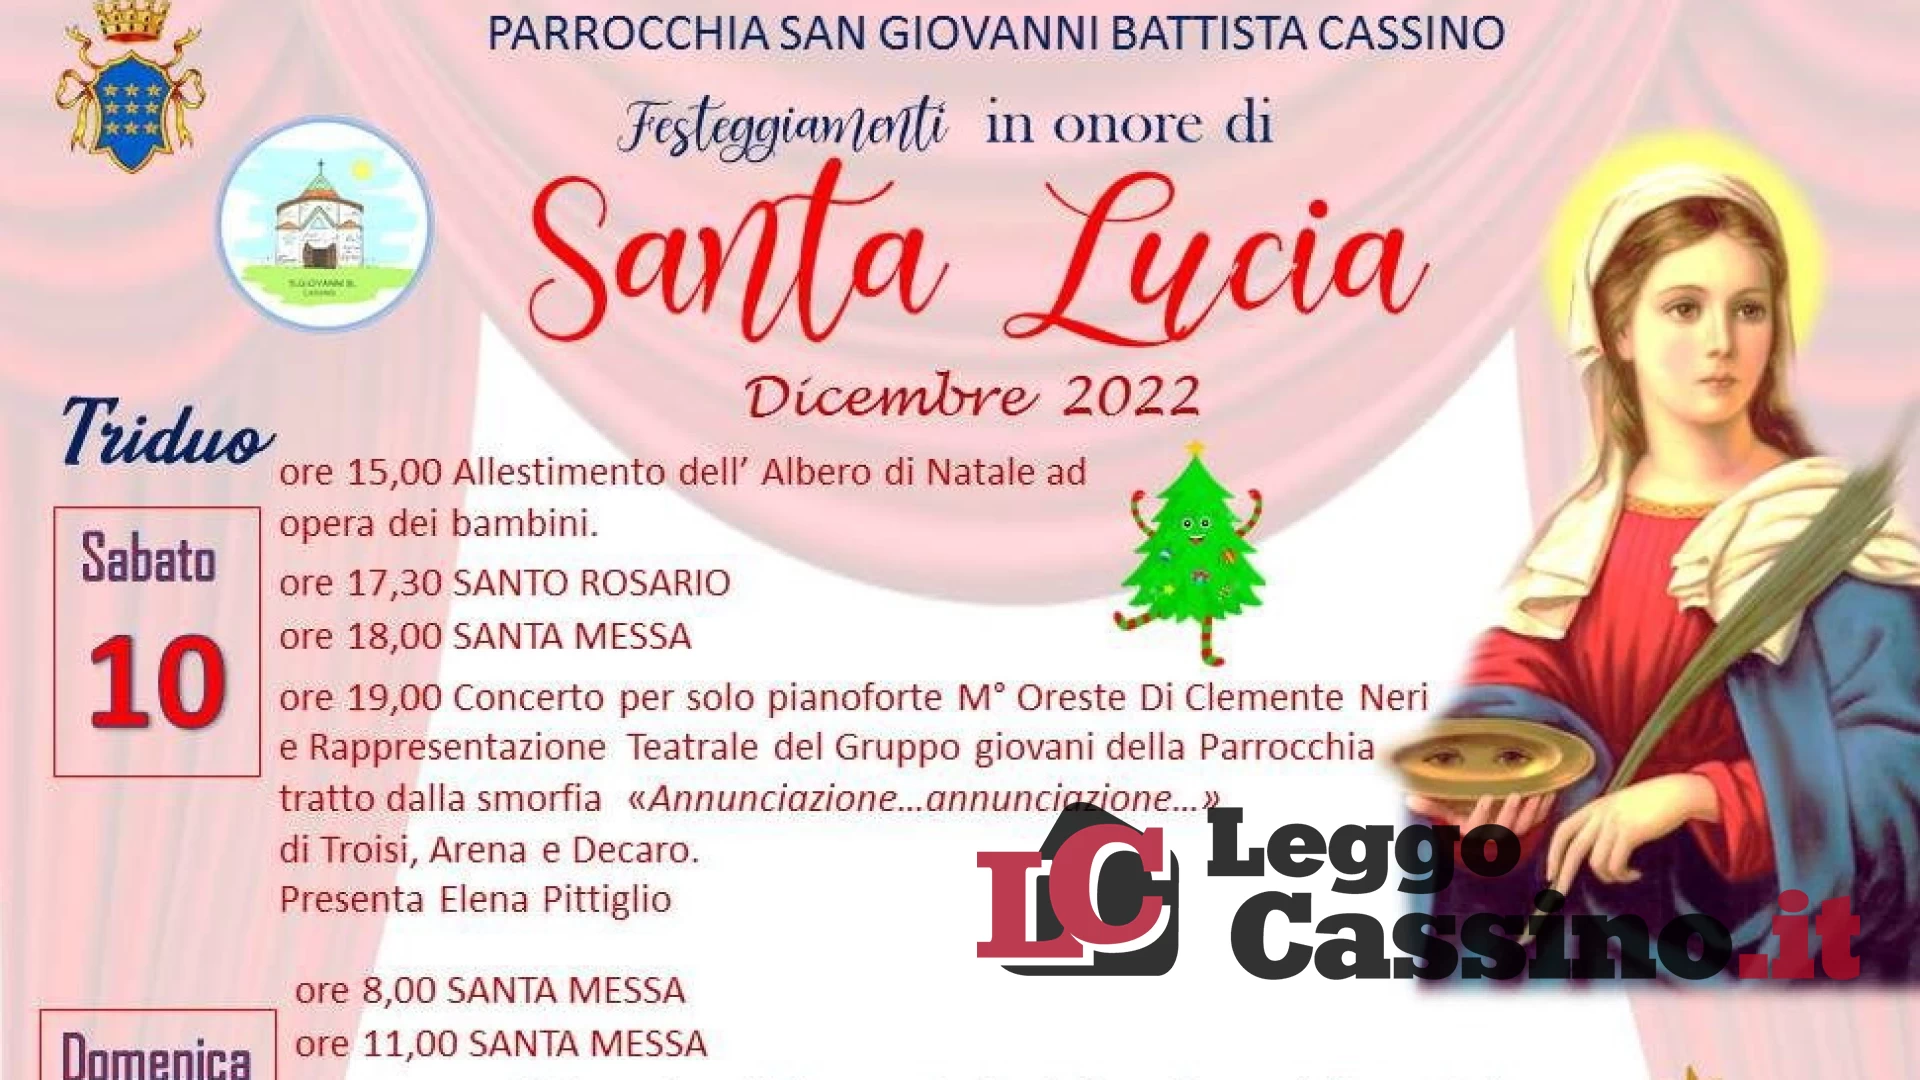 Ritornano a Cassino i festeggiamenti in onore di Santa Lucia